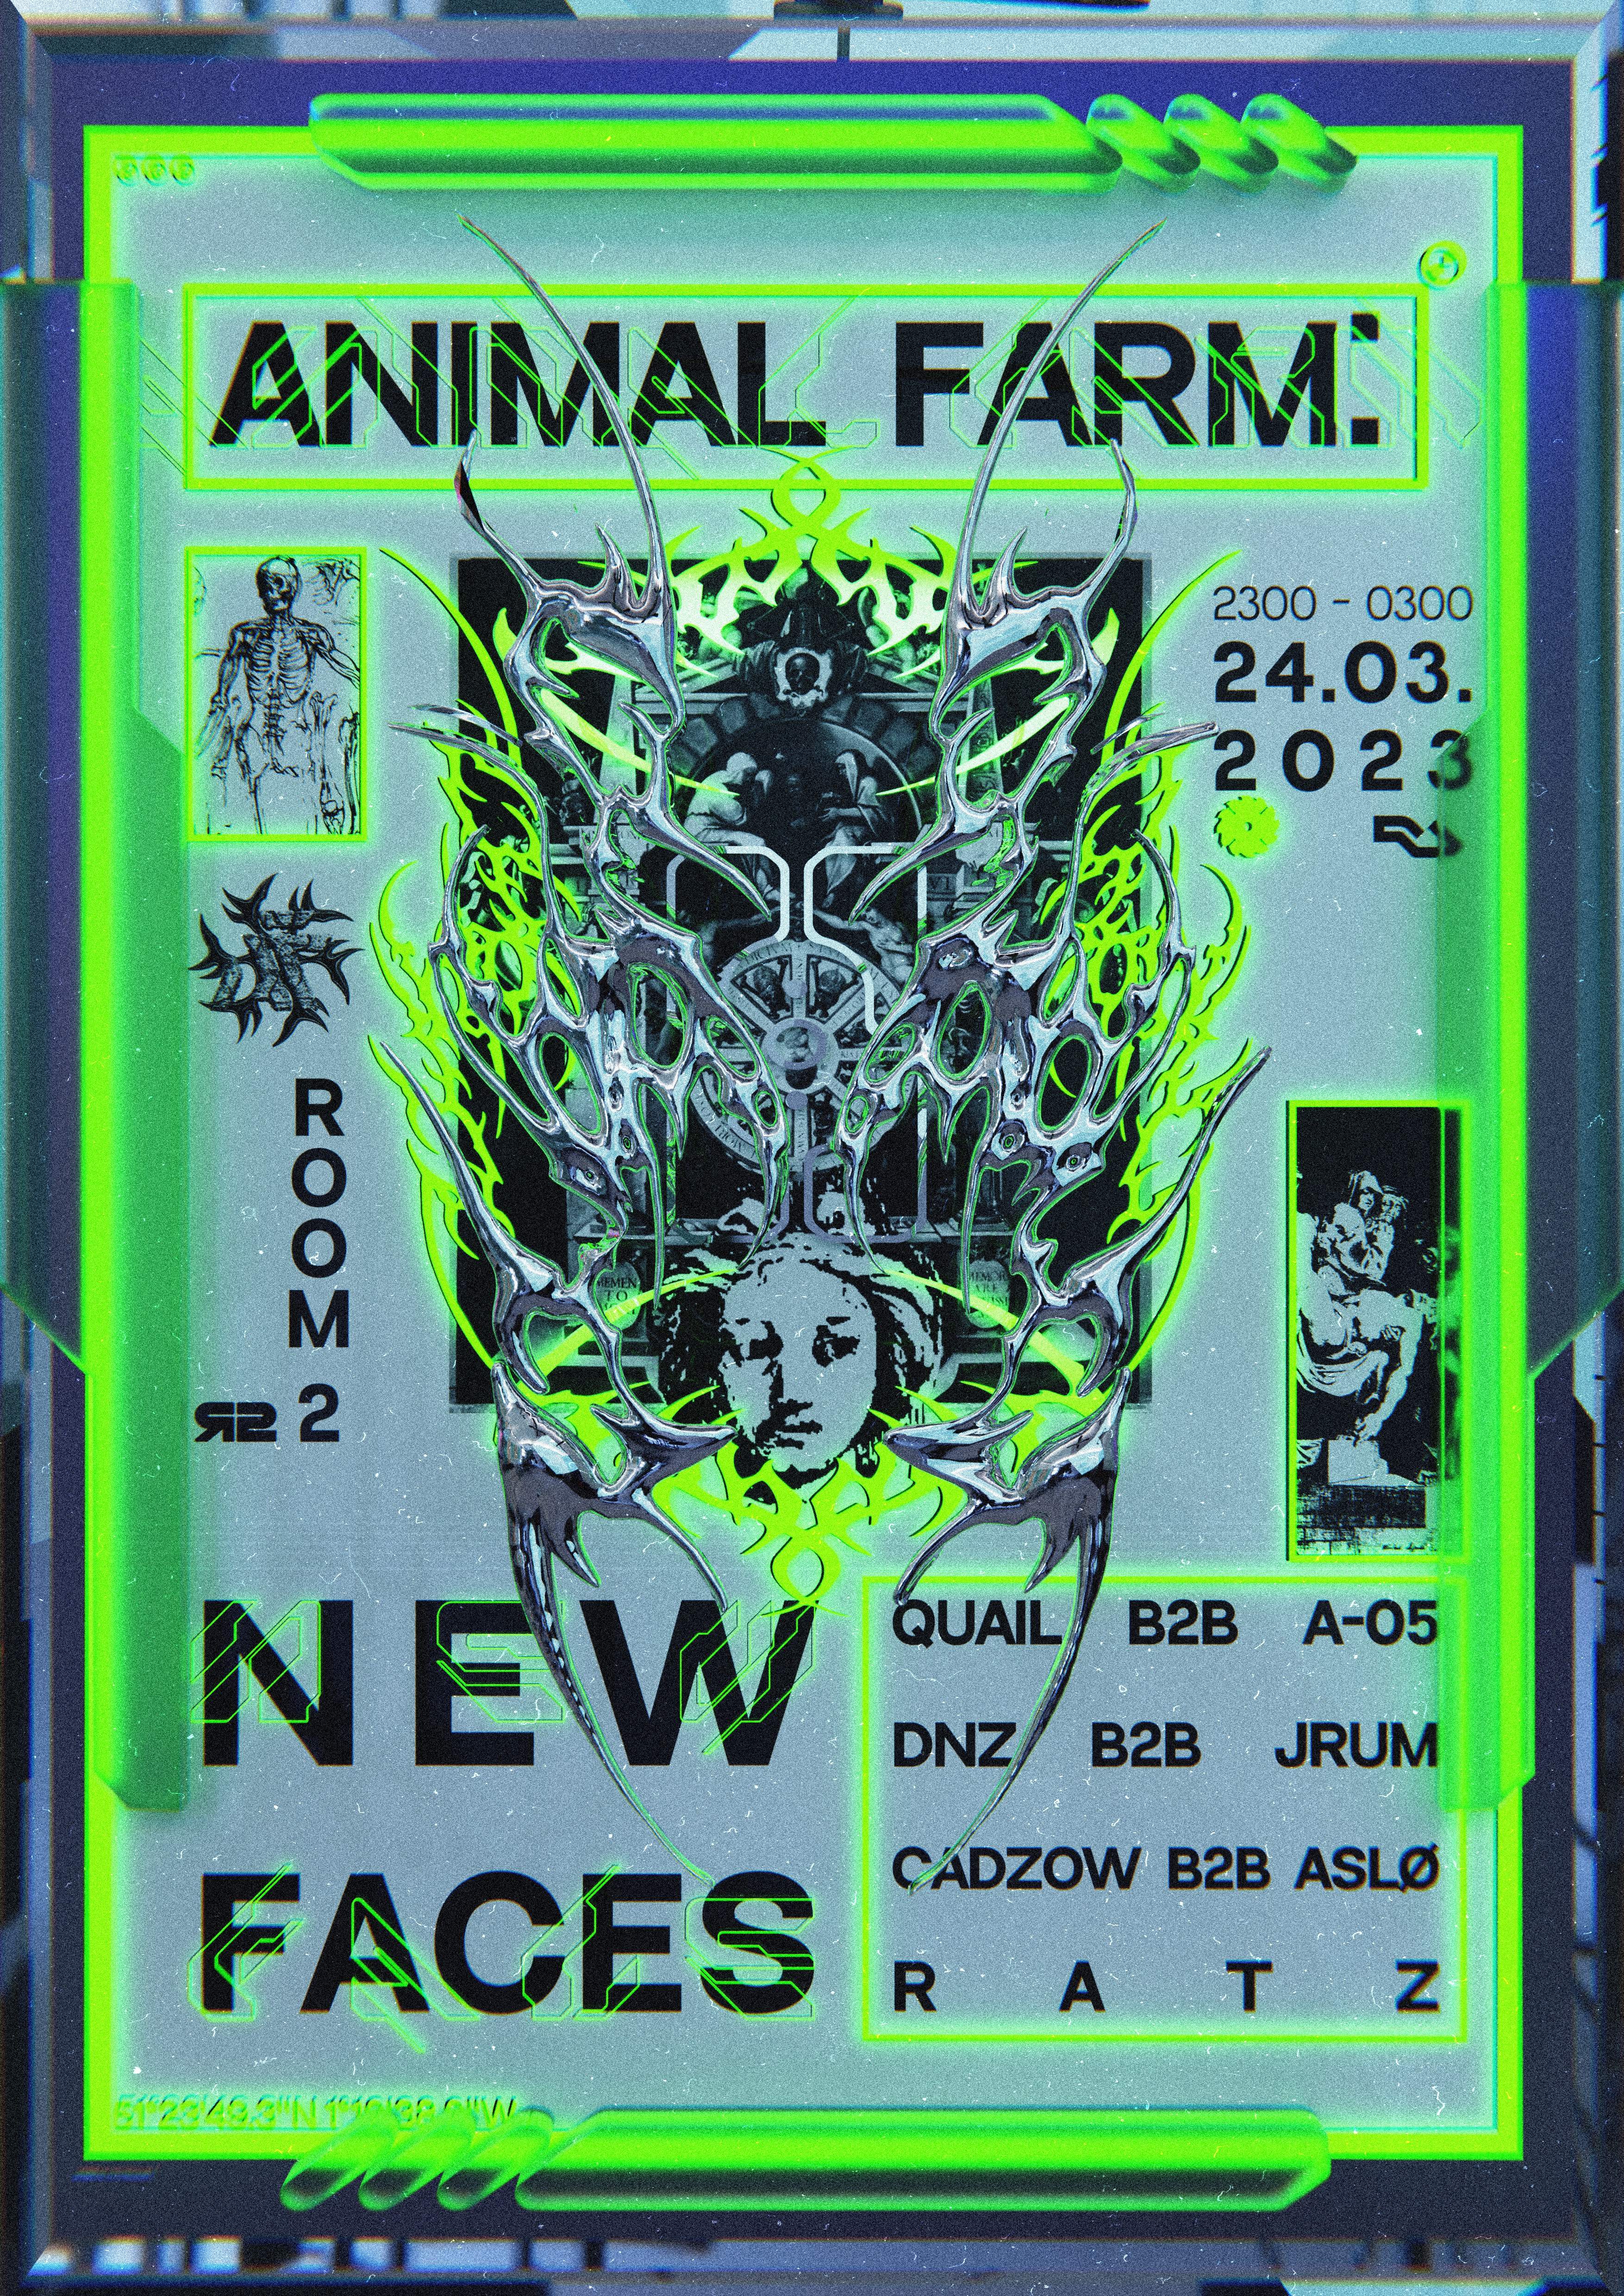 Animal Farm: NEW FACES - フライヤー表